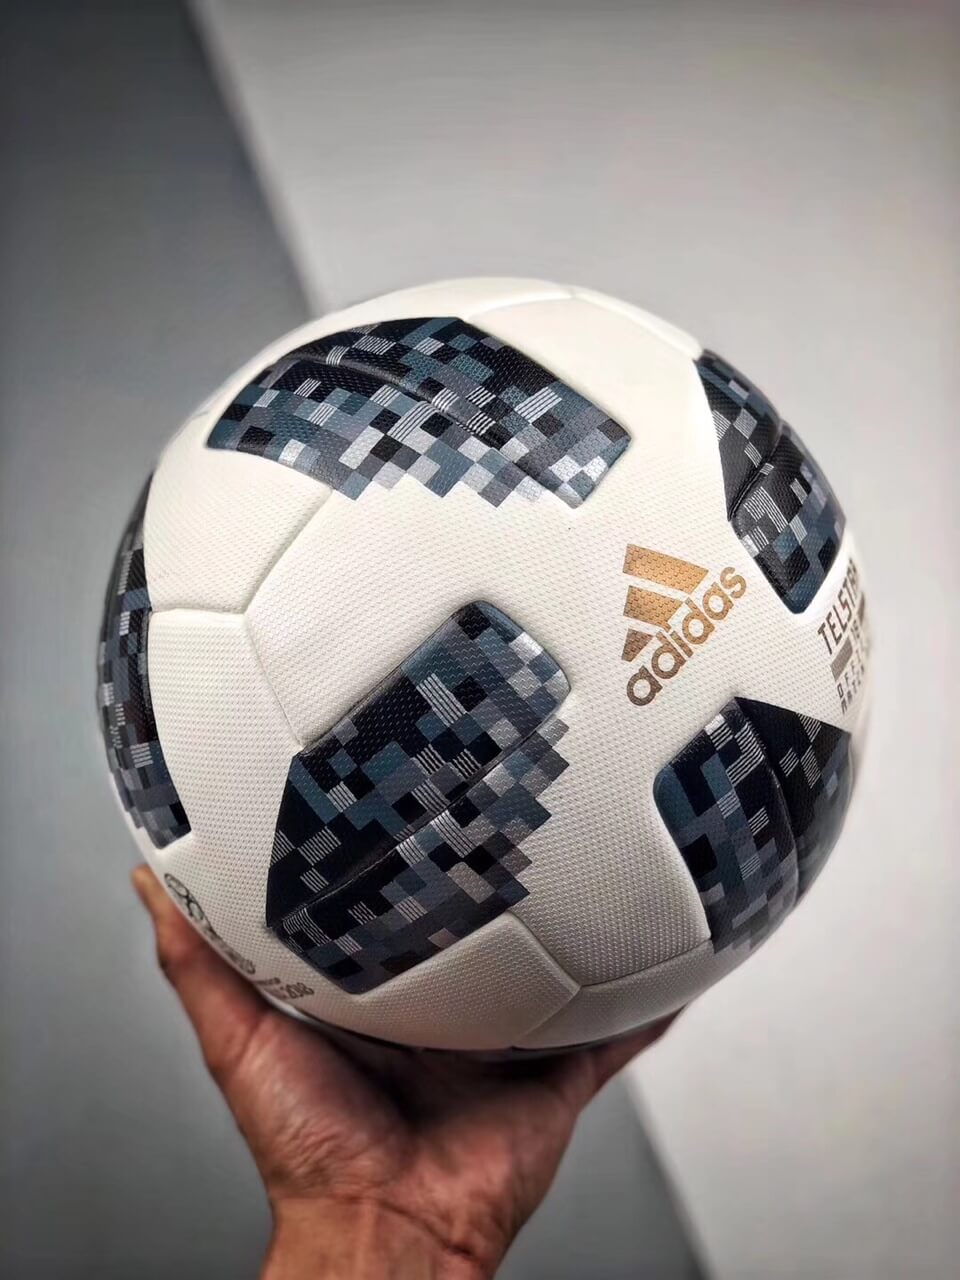 2018 world cup match ball